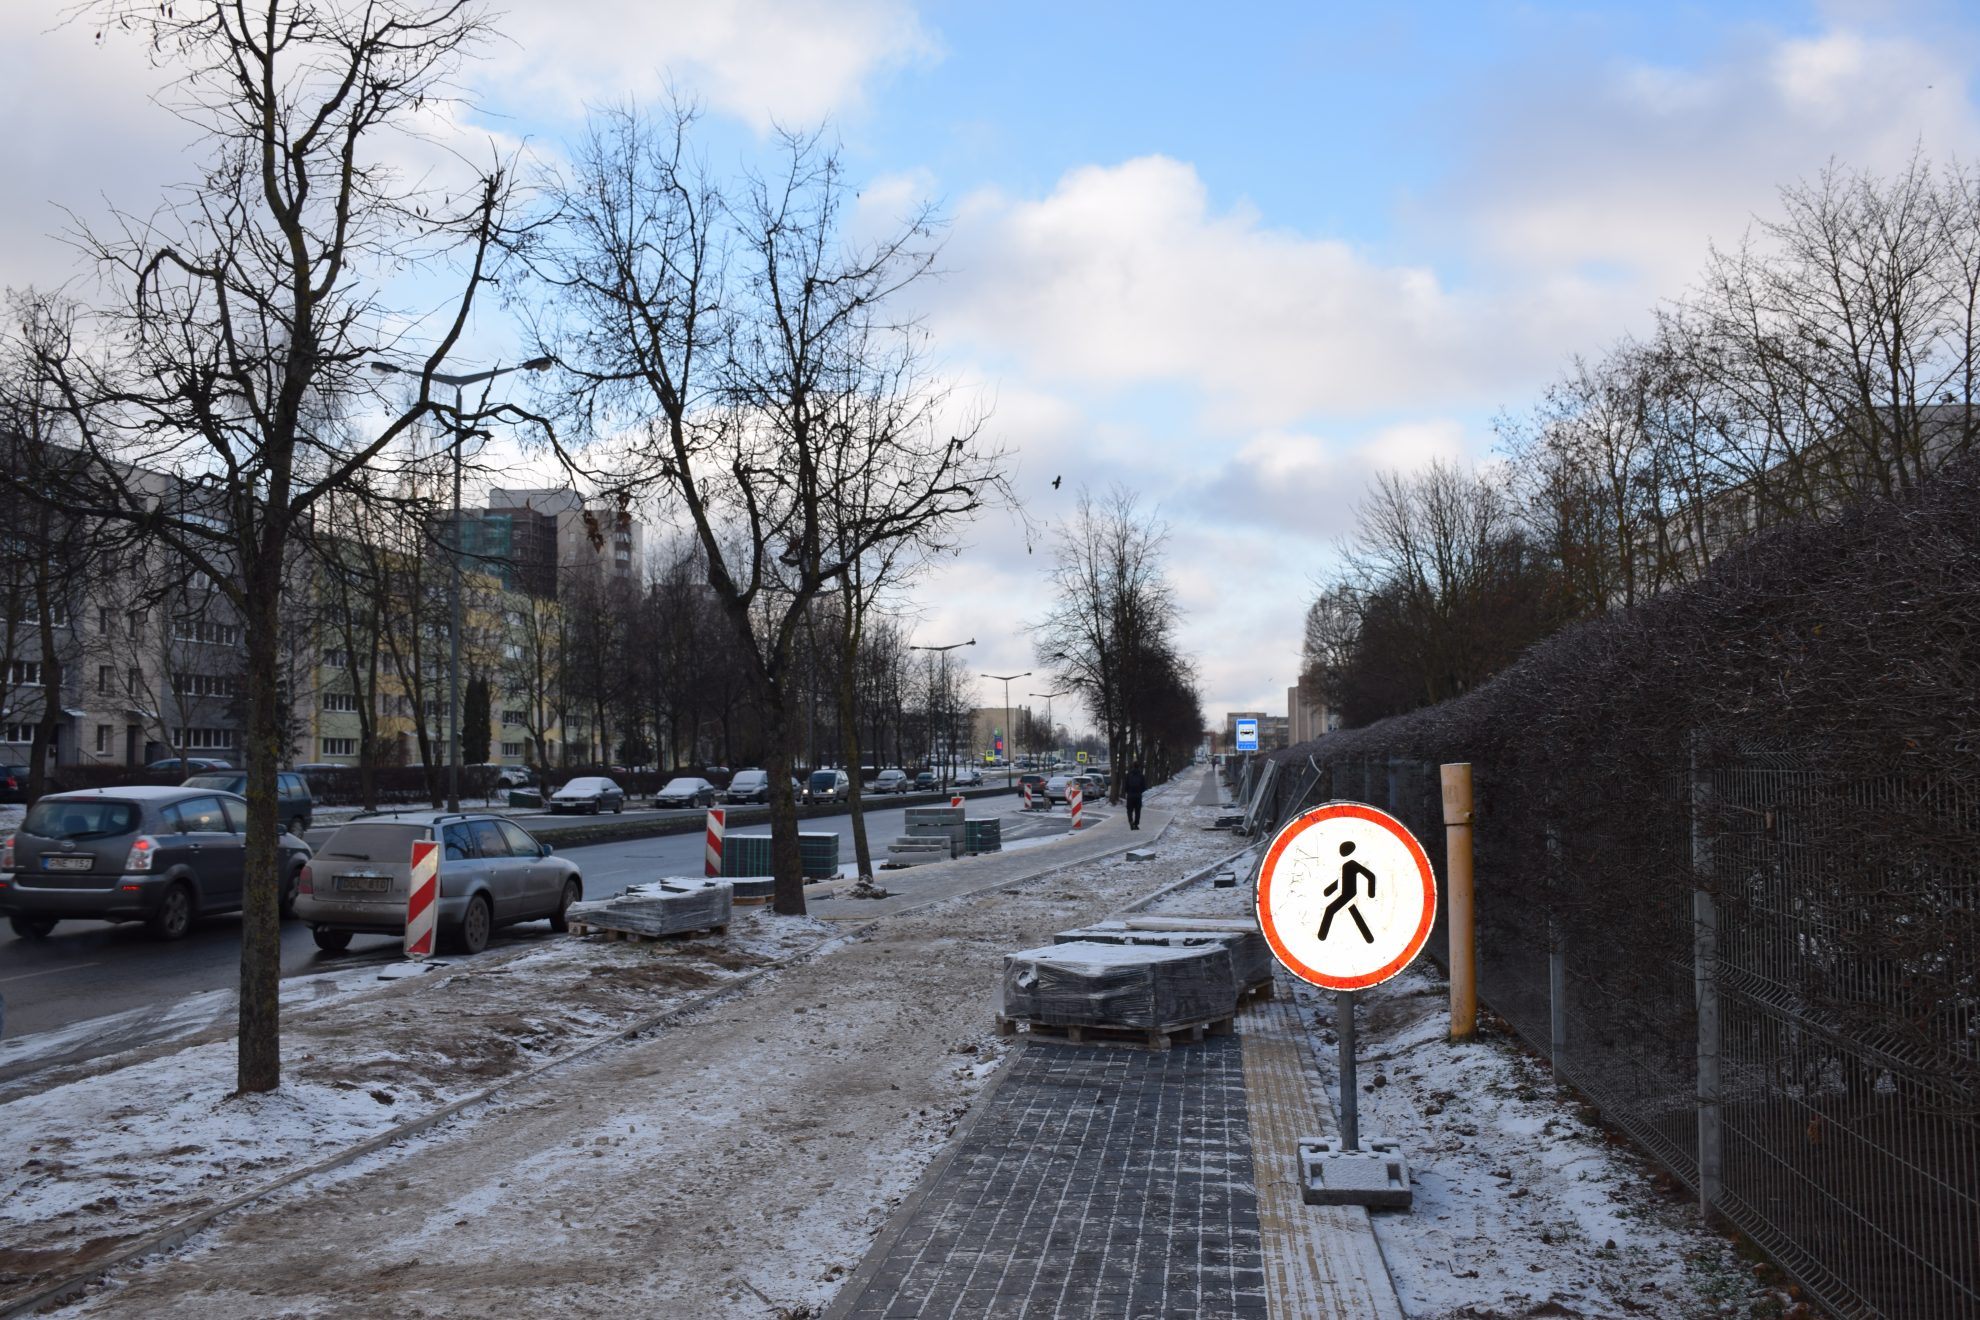 Susisiekimo ministro įsakymu Panevėžio miesto savivaldybės parengtam Nemuno gatvės dviračių tako (nuo Klaipėdos g. iki Ramygalos g.) rekonstrukcijos ir plėtros projektui skirta daugiau kaip 275 tūkst. Eur ES lėšų. Finansavimo sutartį planuojama pasirašyti gruodžio mėnesį.